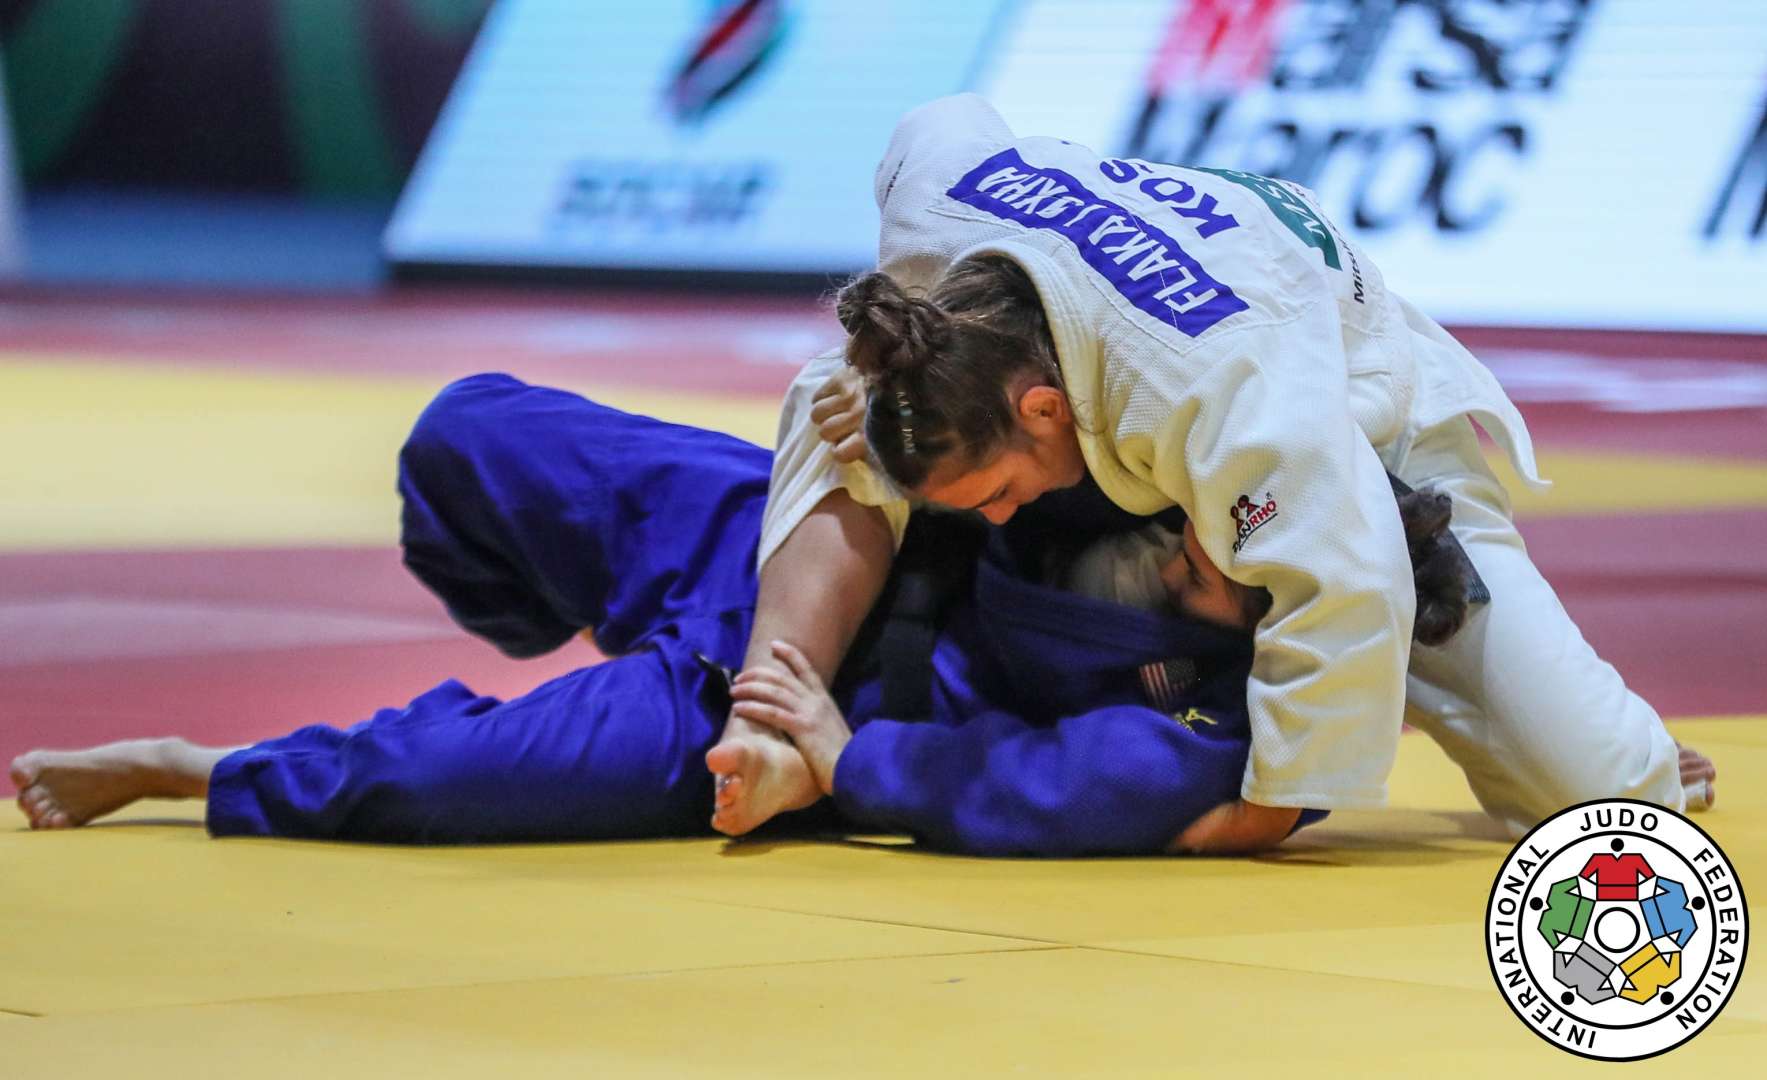 judo video auf nachfrage